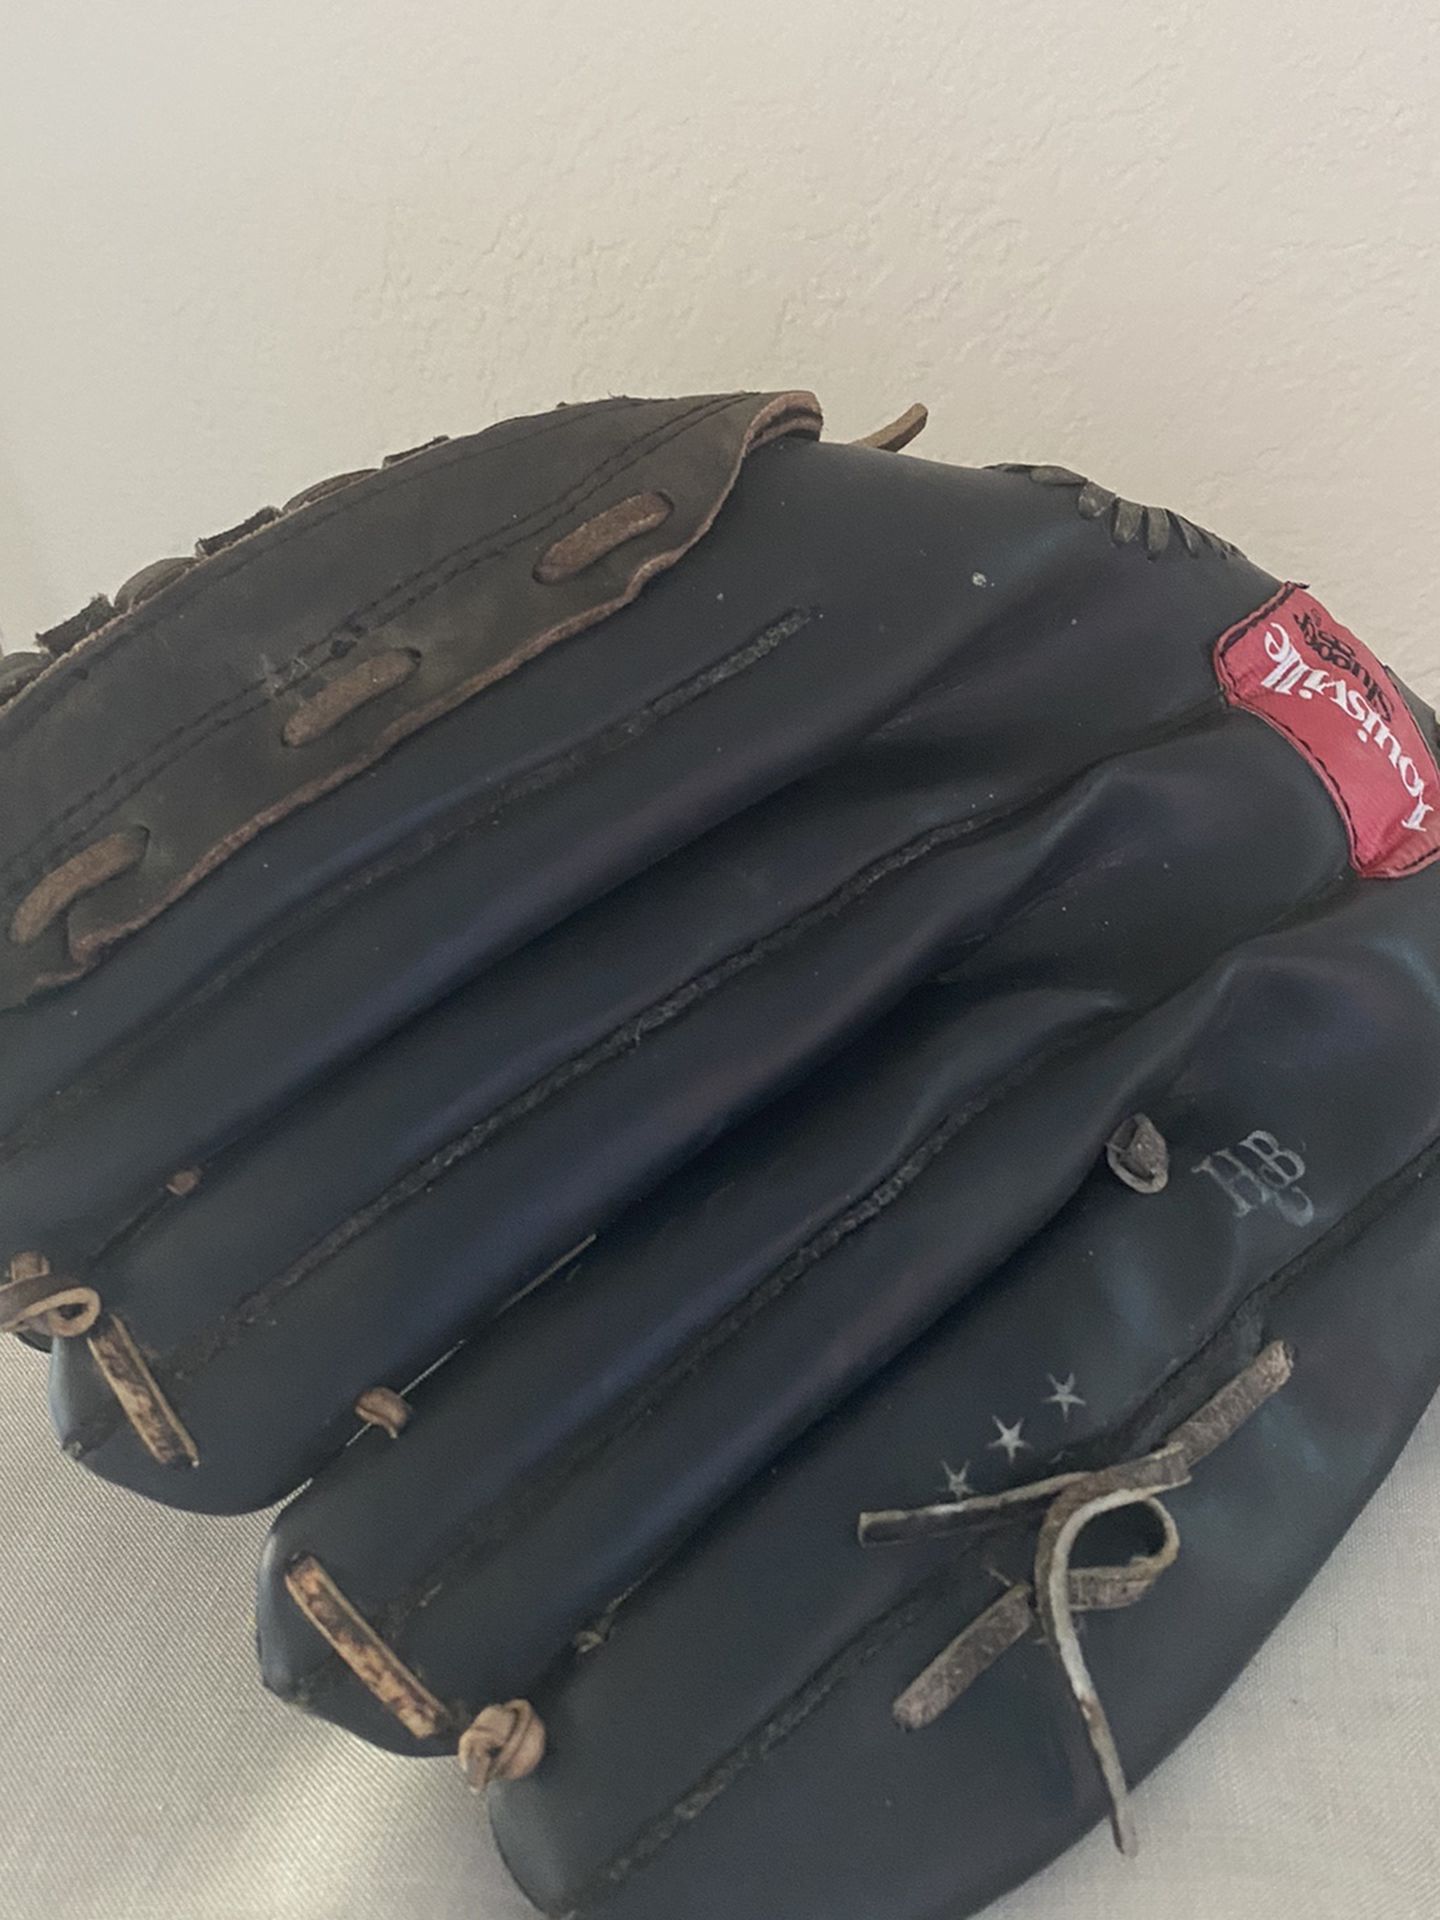 Louisville Slugger The Softballer Glove 13.5 inch LH